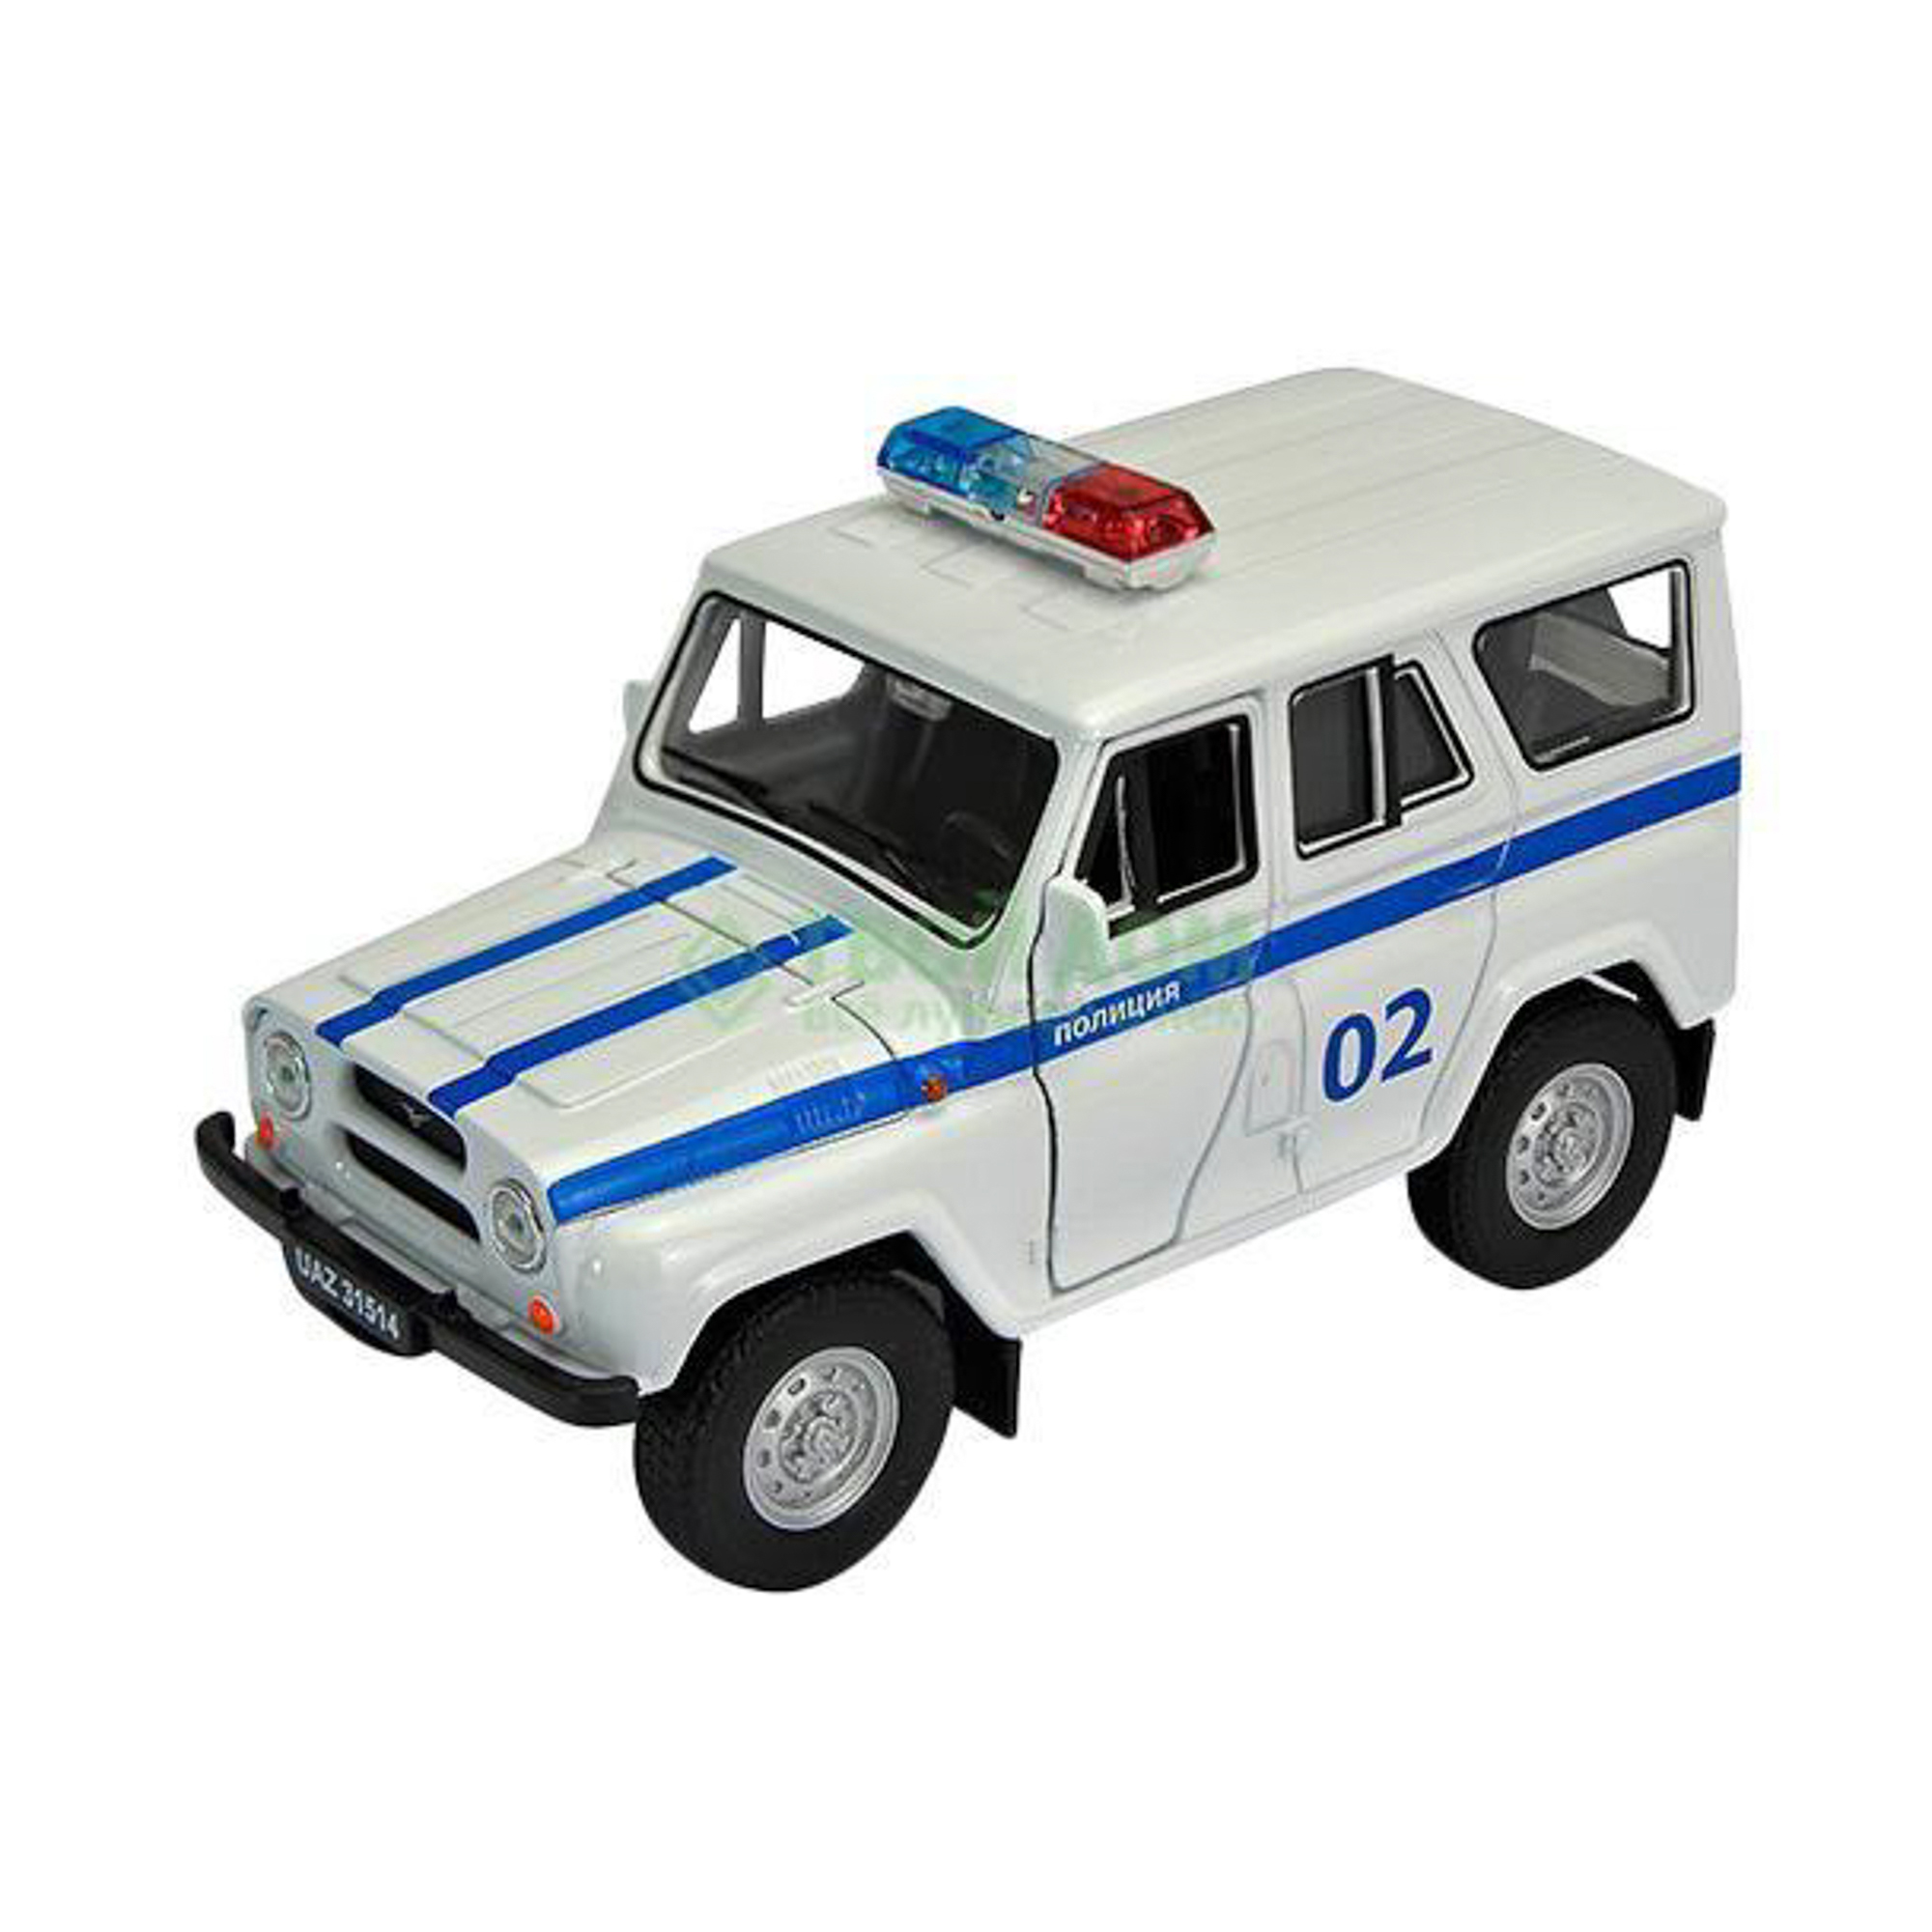 Машинка Welly Уаз 31514 полиция (42380PB), цвет синий - фото 1